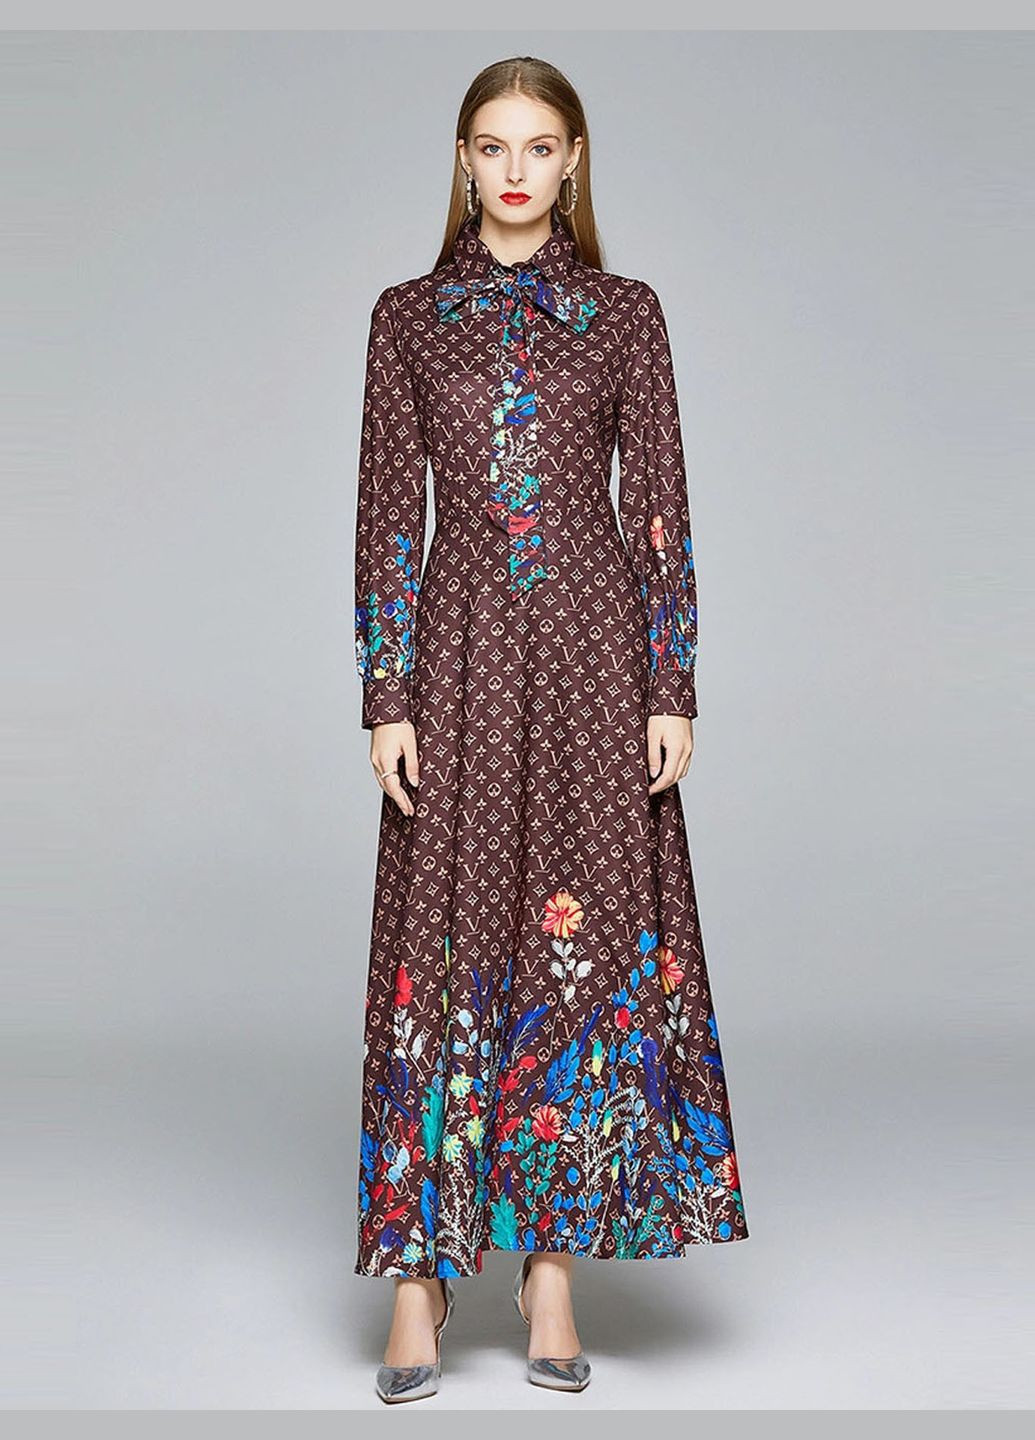 Коричневое вечернее платье принтовое макси lw-216 коричневый Lowett с цветочным принтом